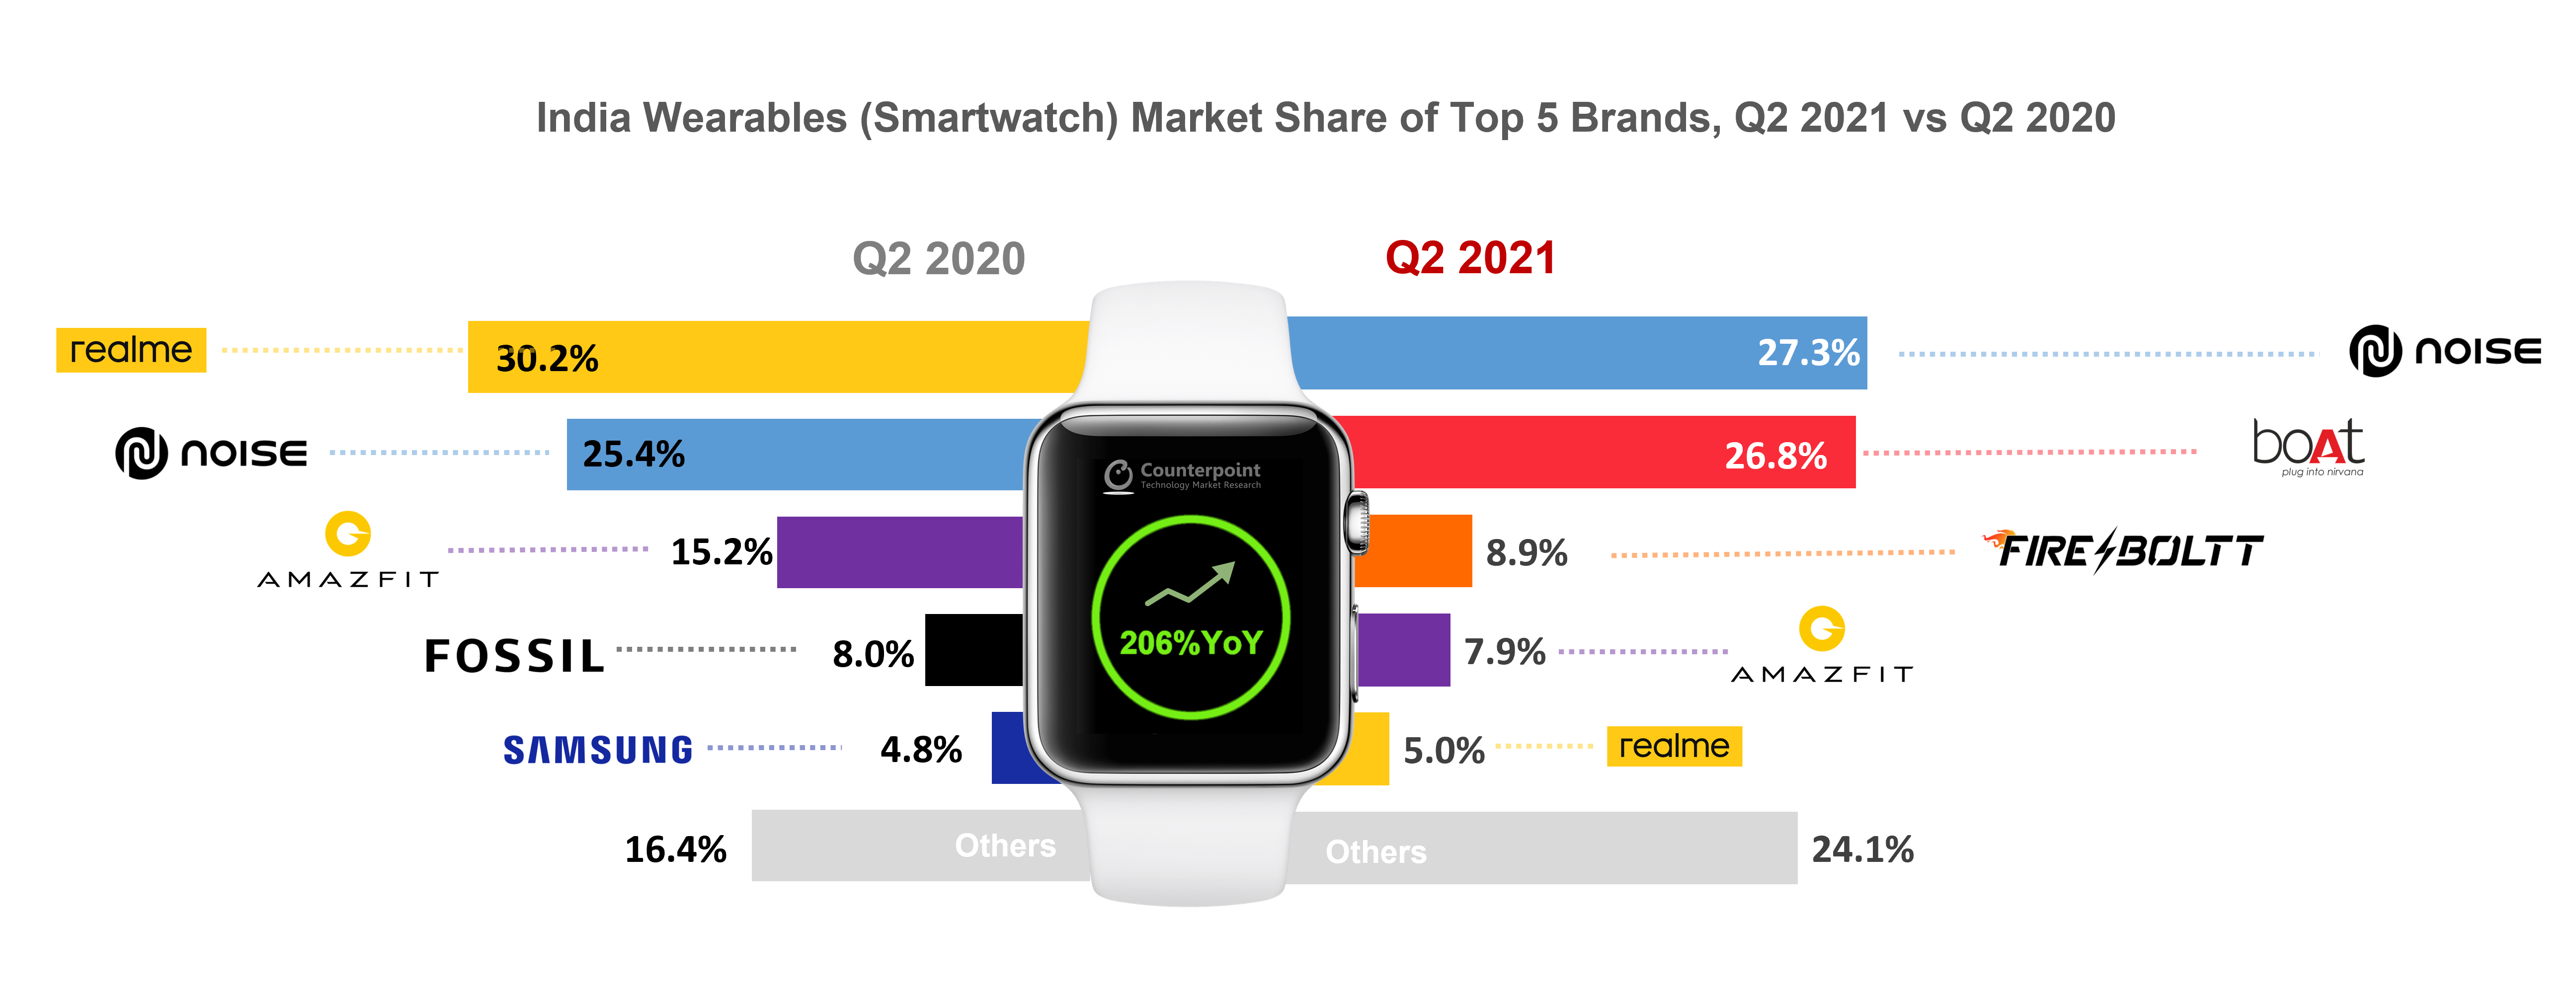 印度前五大品牌可穿戴设备(智能手表)市场份额对比，2021年第二季度与2020年第二季度